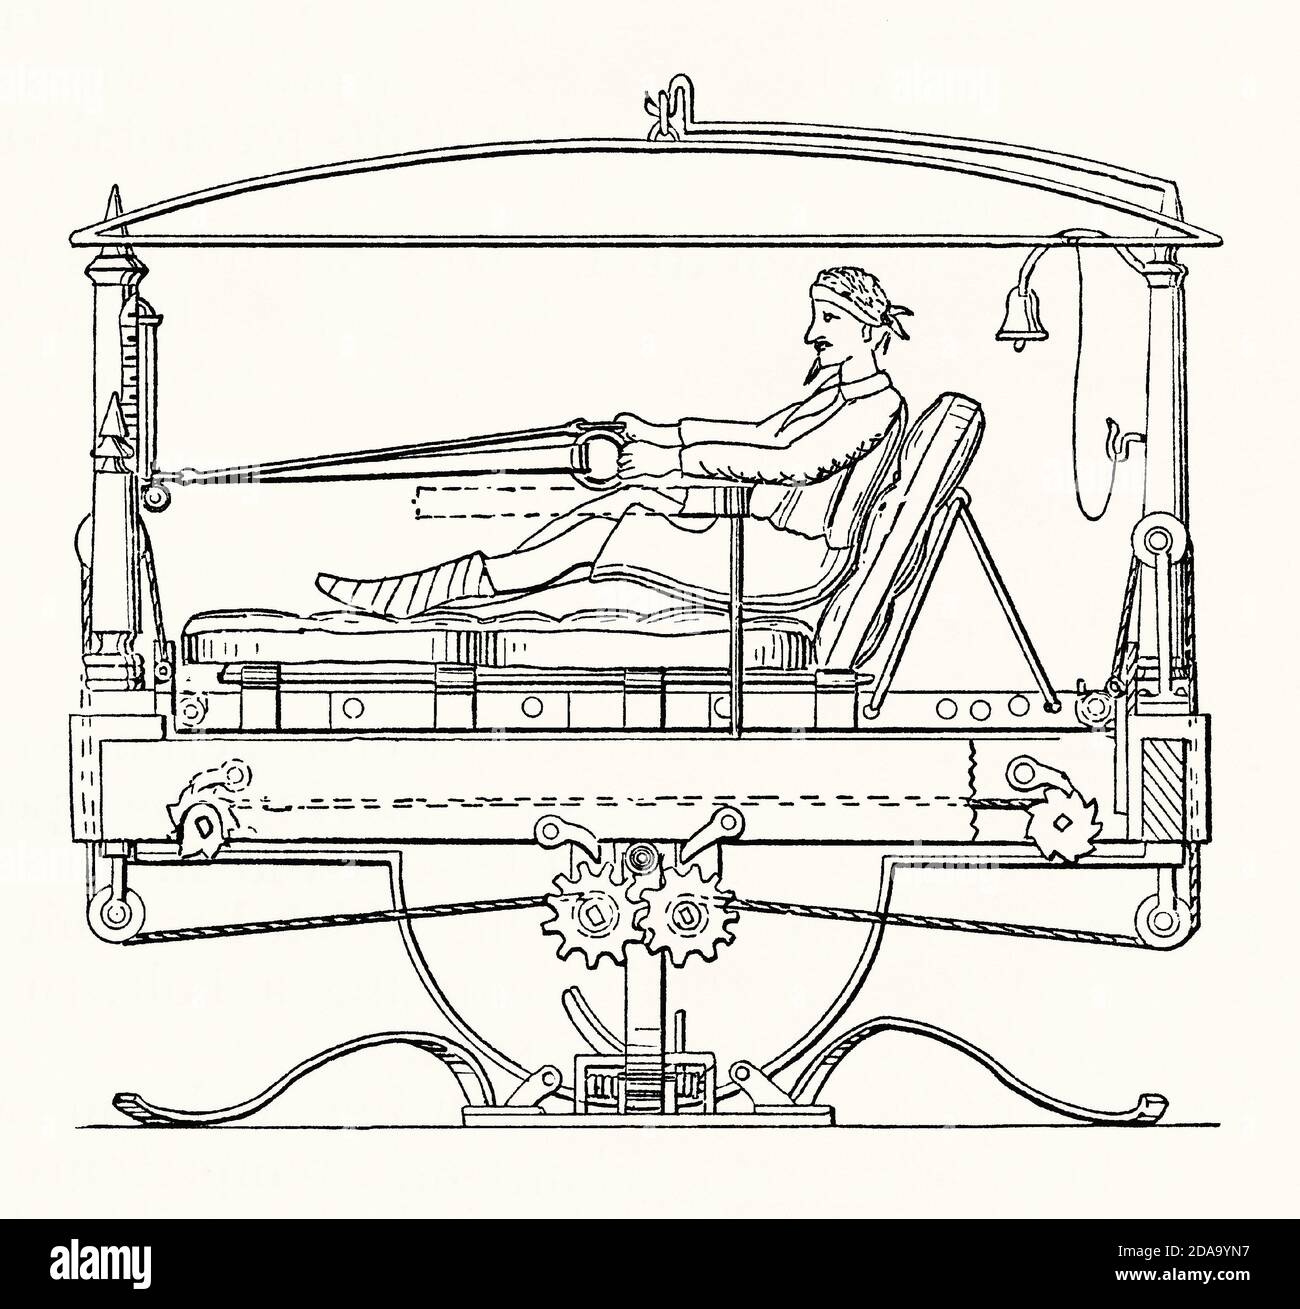 Una vecchia incisione di un apparato di esercizio. E 'da un libro di ingegneria meccanica vittoriana del 1880. L'esempio illustrato è di un uomo da letto su uno speciale meccanismo di letto. Utilizza un sistema di carrucole a molla, simile a una moderna vogatrice, con l'uomo che usa le braccia per mantenere il corpo in movimento e per flettere ed estendere i muscoli delle gambe durante la riabilitazione – la gamba sinistra è in gesso. Il materasso si sposta avanti e indietro e l'intero letto si muove al centro. Foto Stock